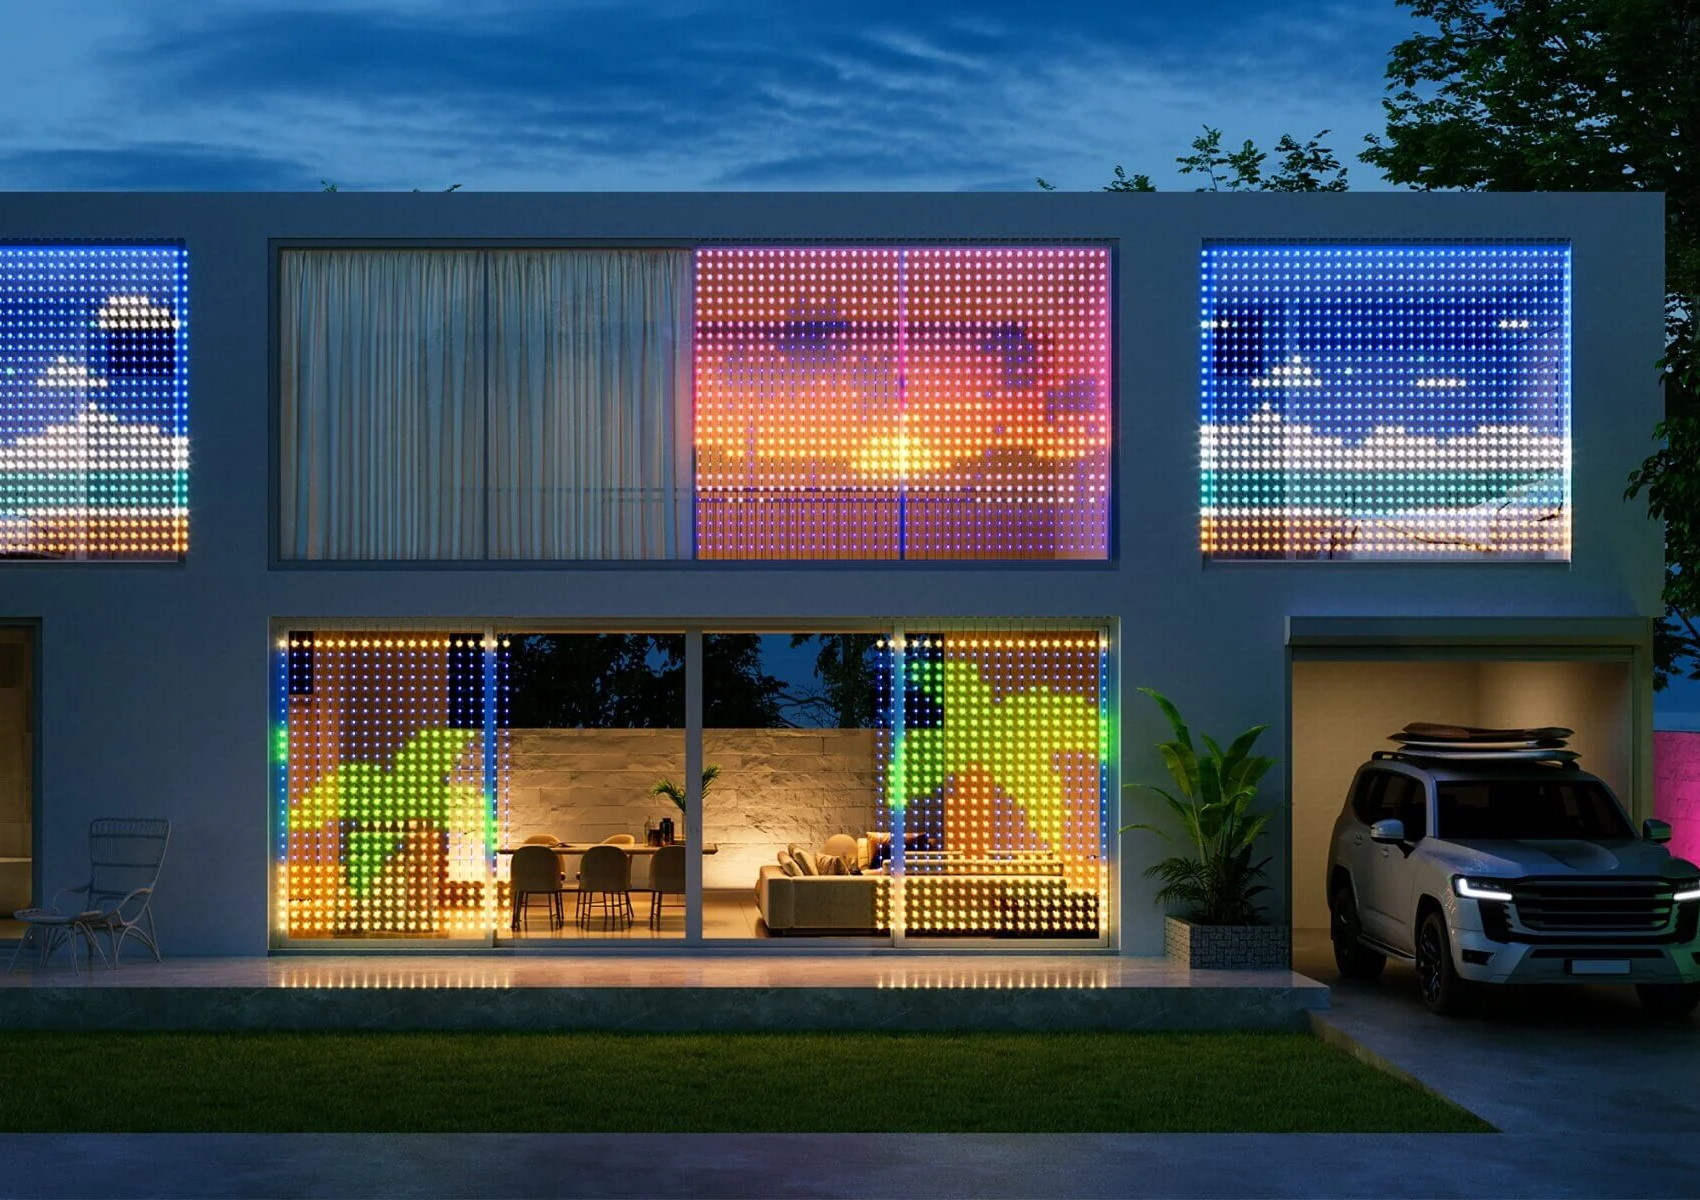 Govee Curtain Lights: Erweiterbarer RGB-Lichtvorgang auch für individuelle  Nachrichten startet mit Rabatt -  News